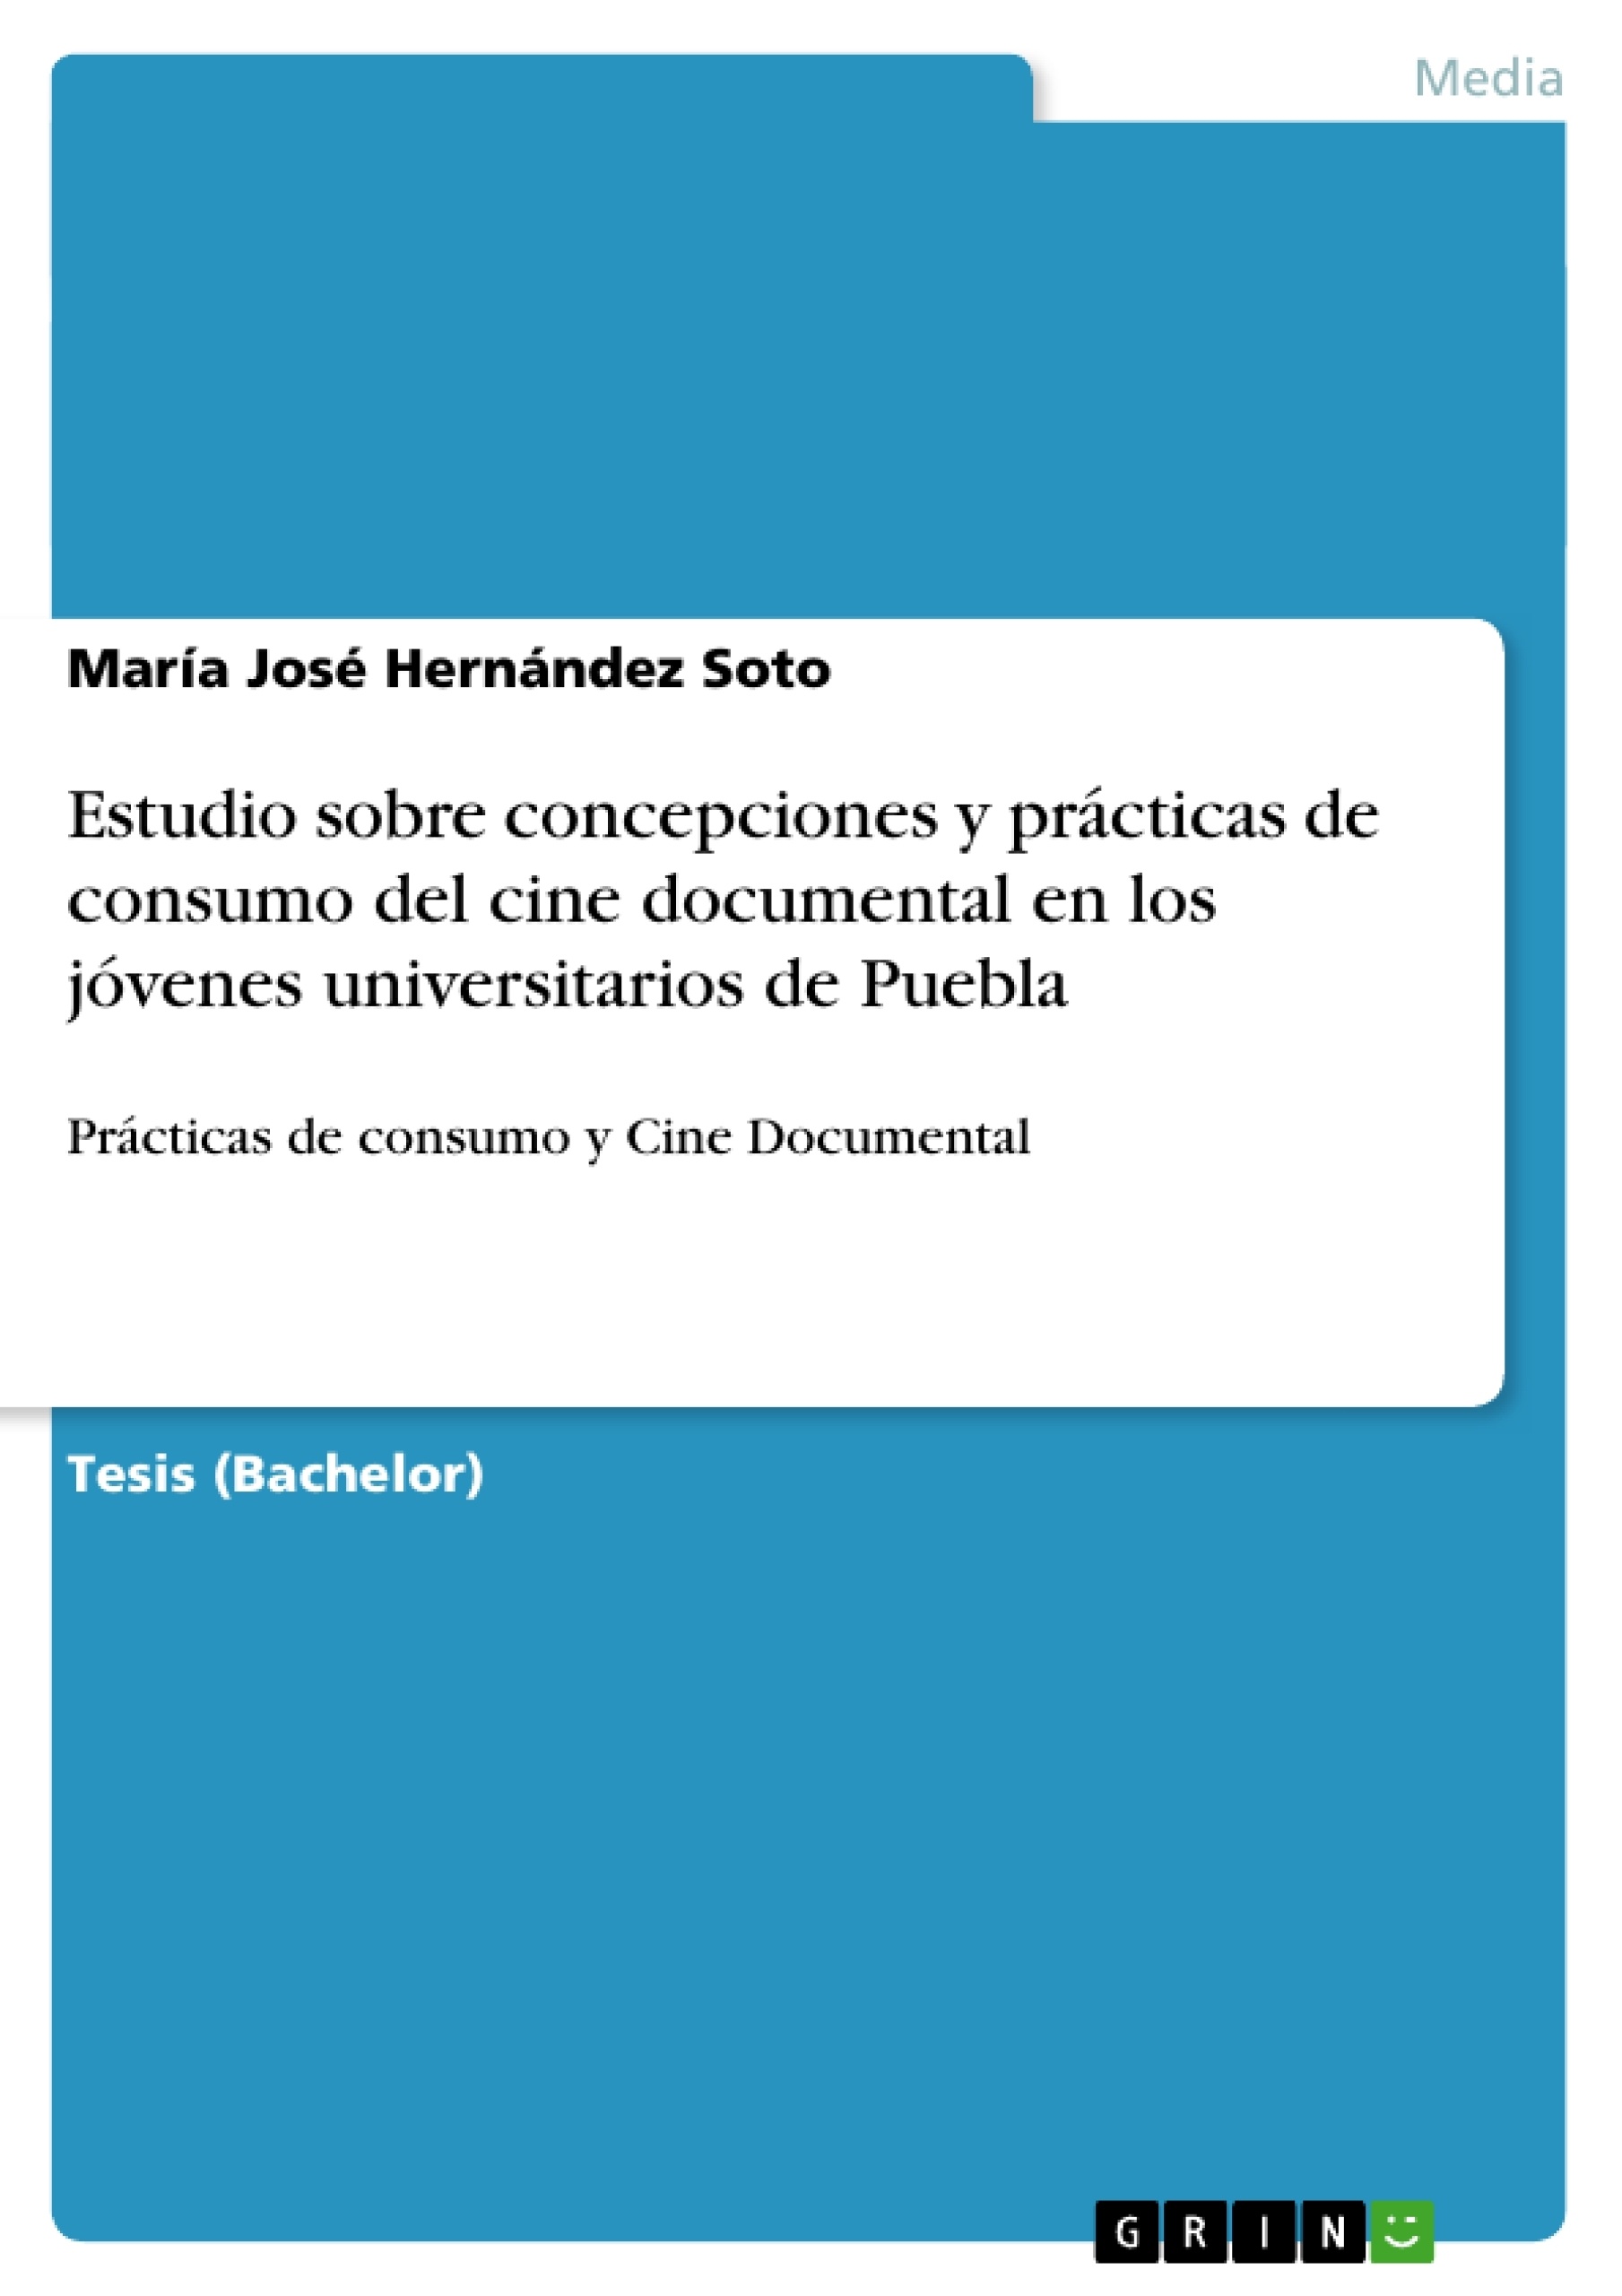 Título: Estudio sobre concepciones y prácticas de consumo del cine documental en los jóvenes universitarios de Puebla